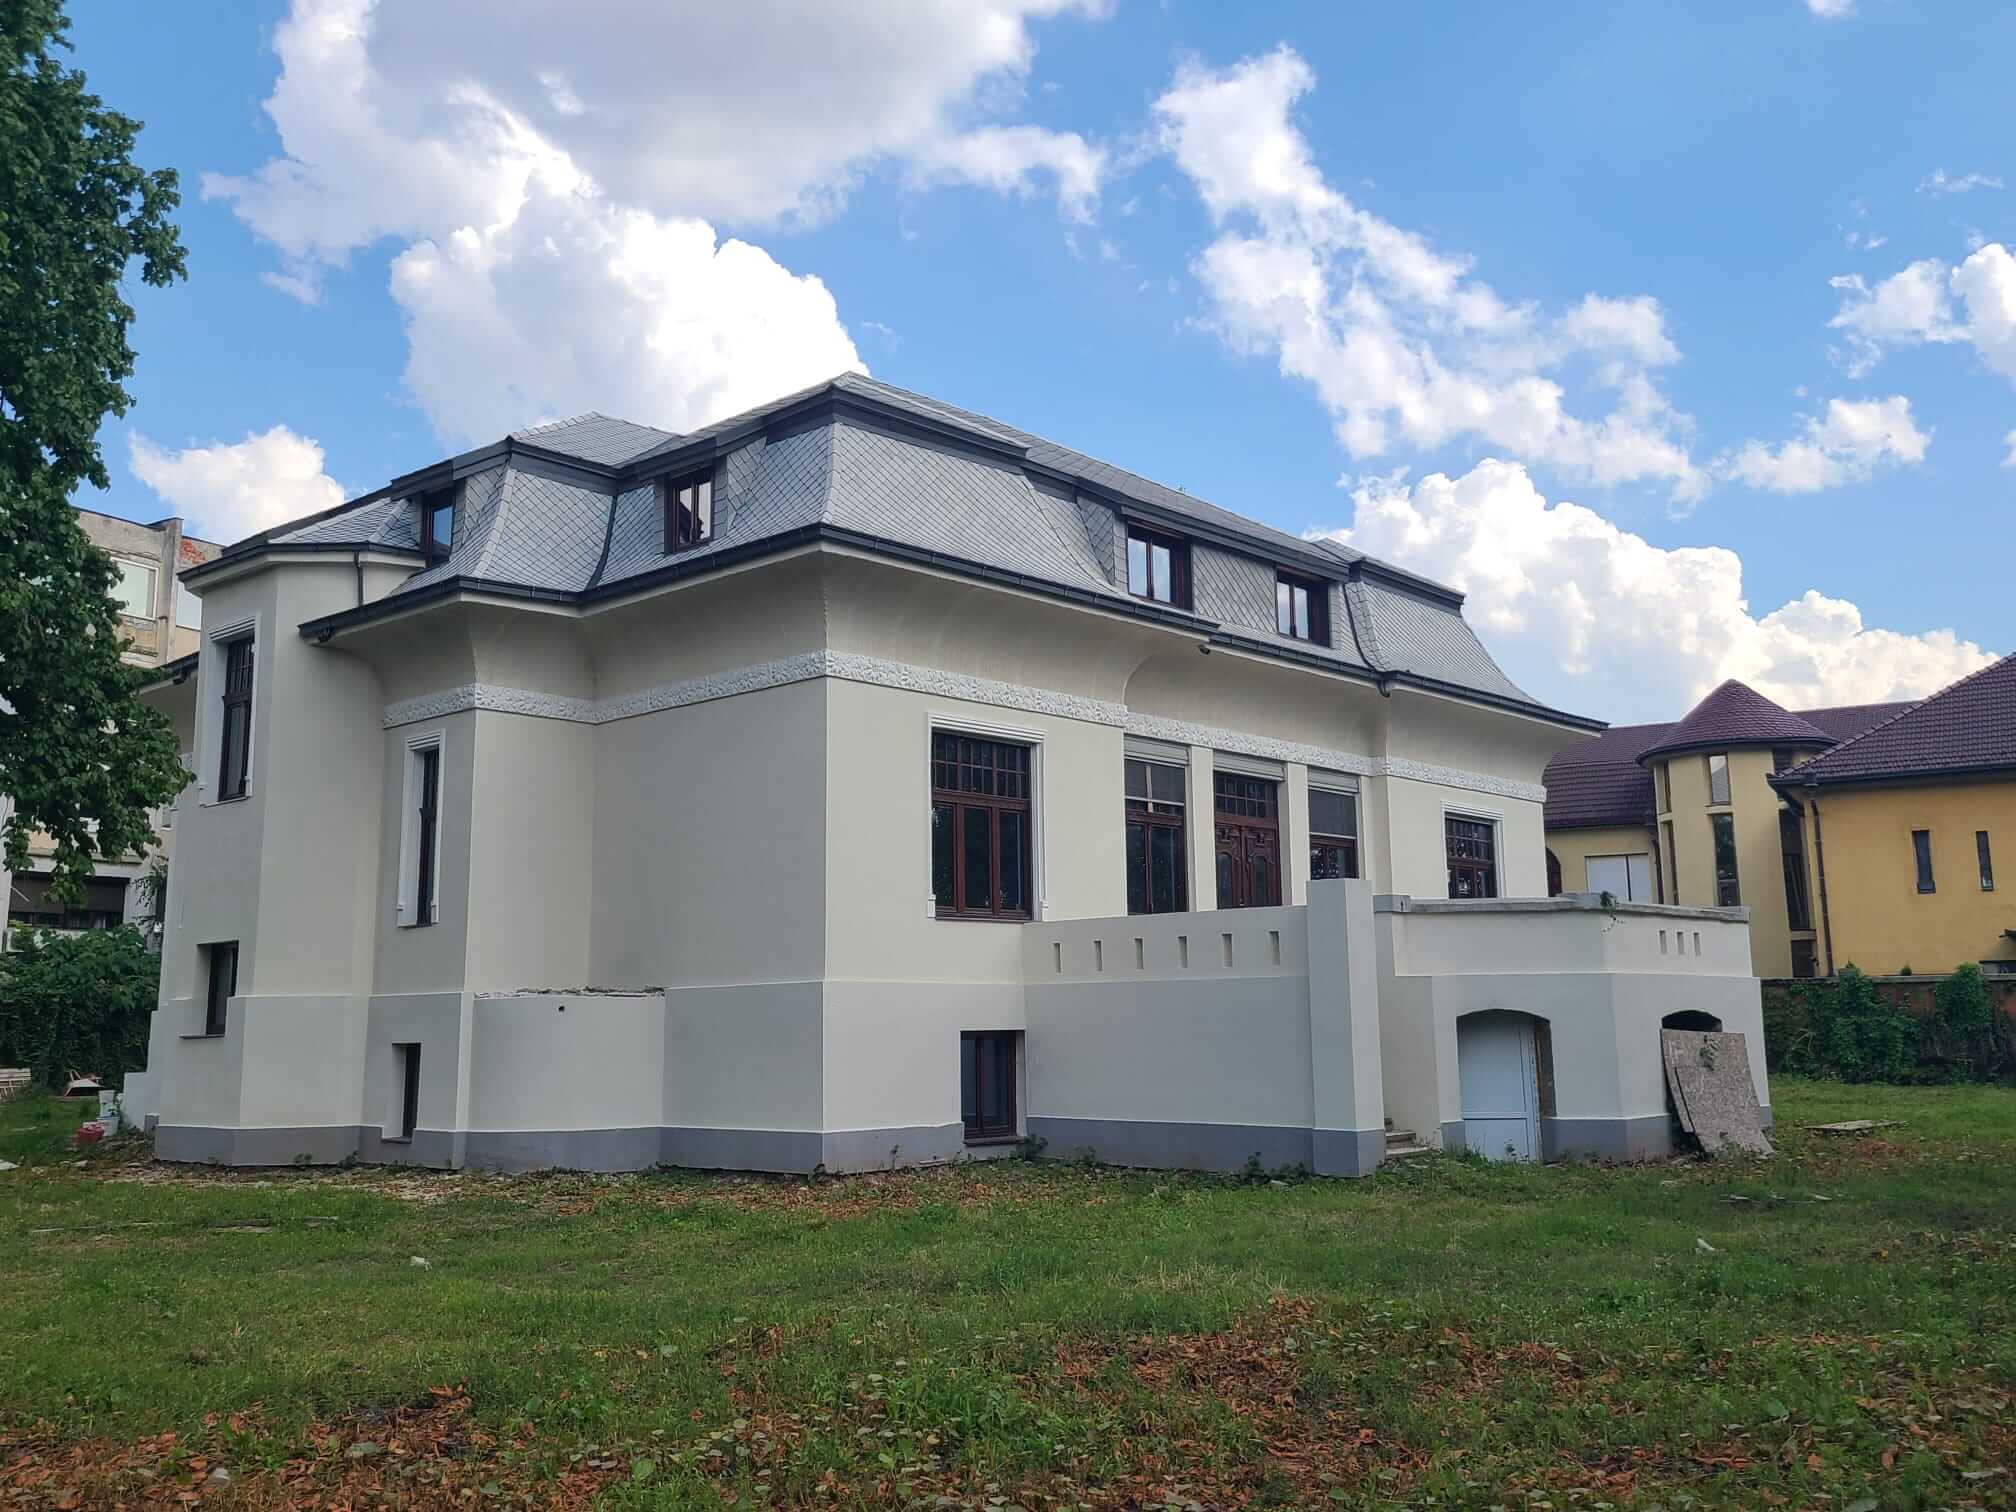 Primăria Timișoara obligă proprietarul să restaureze Casa Muhle